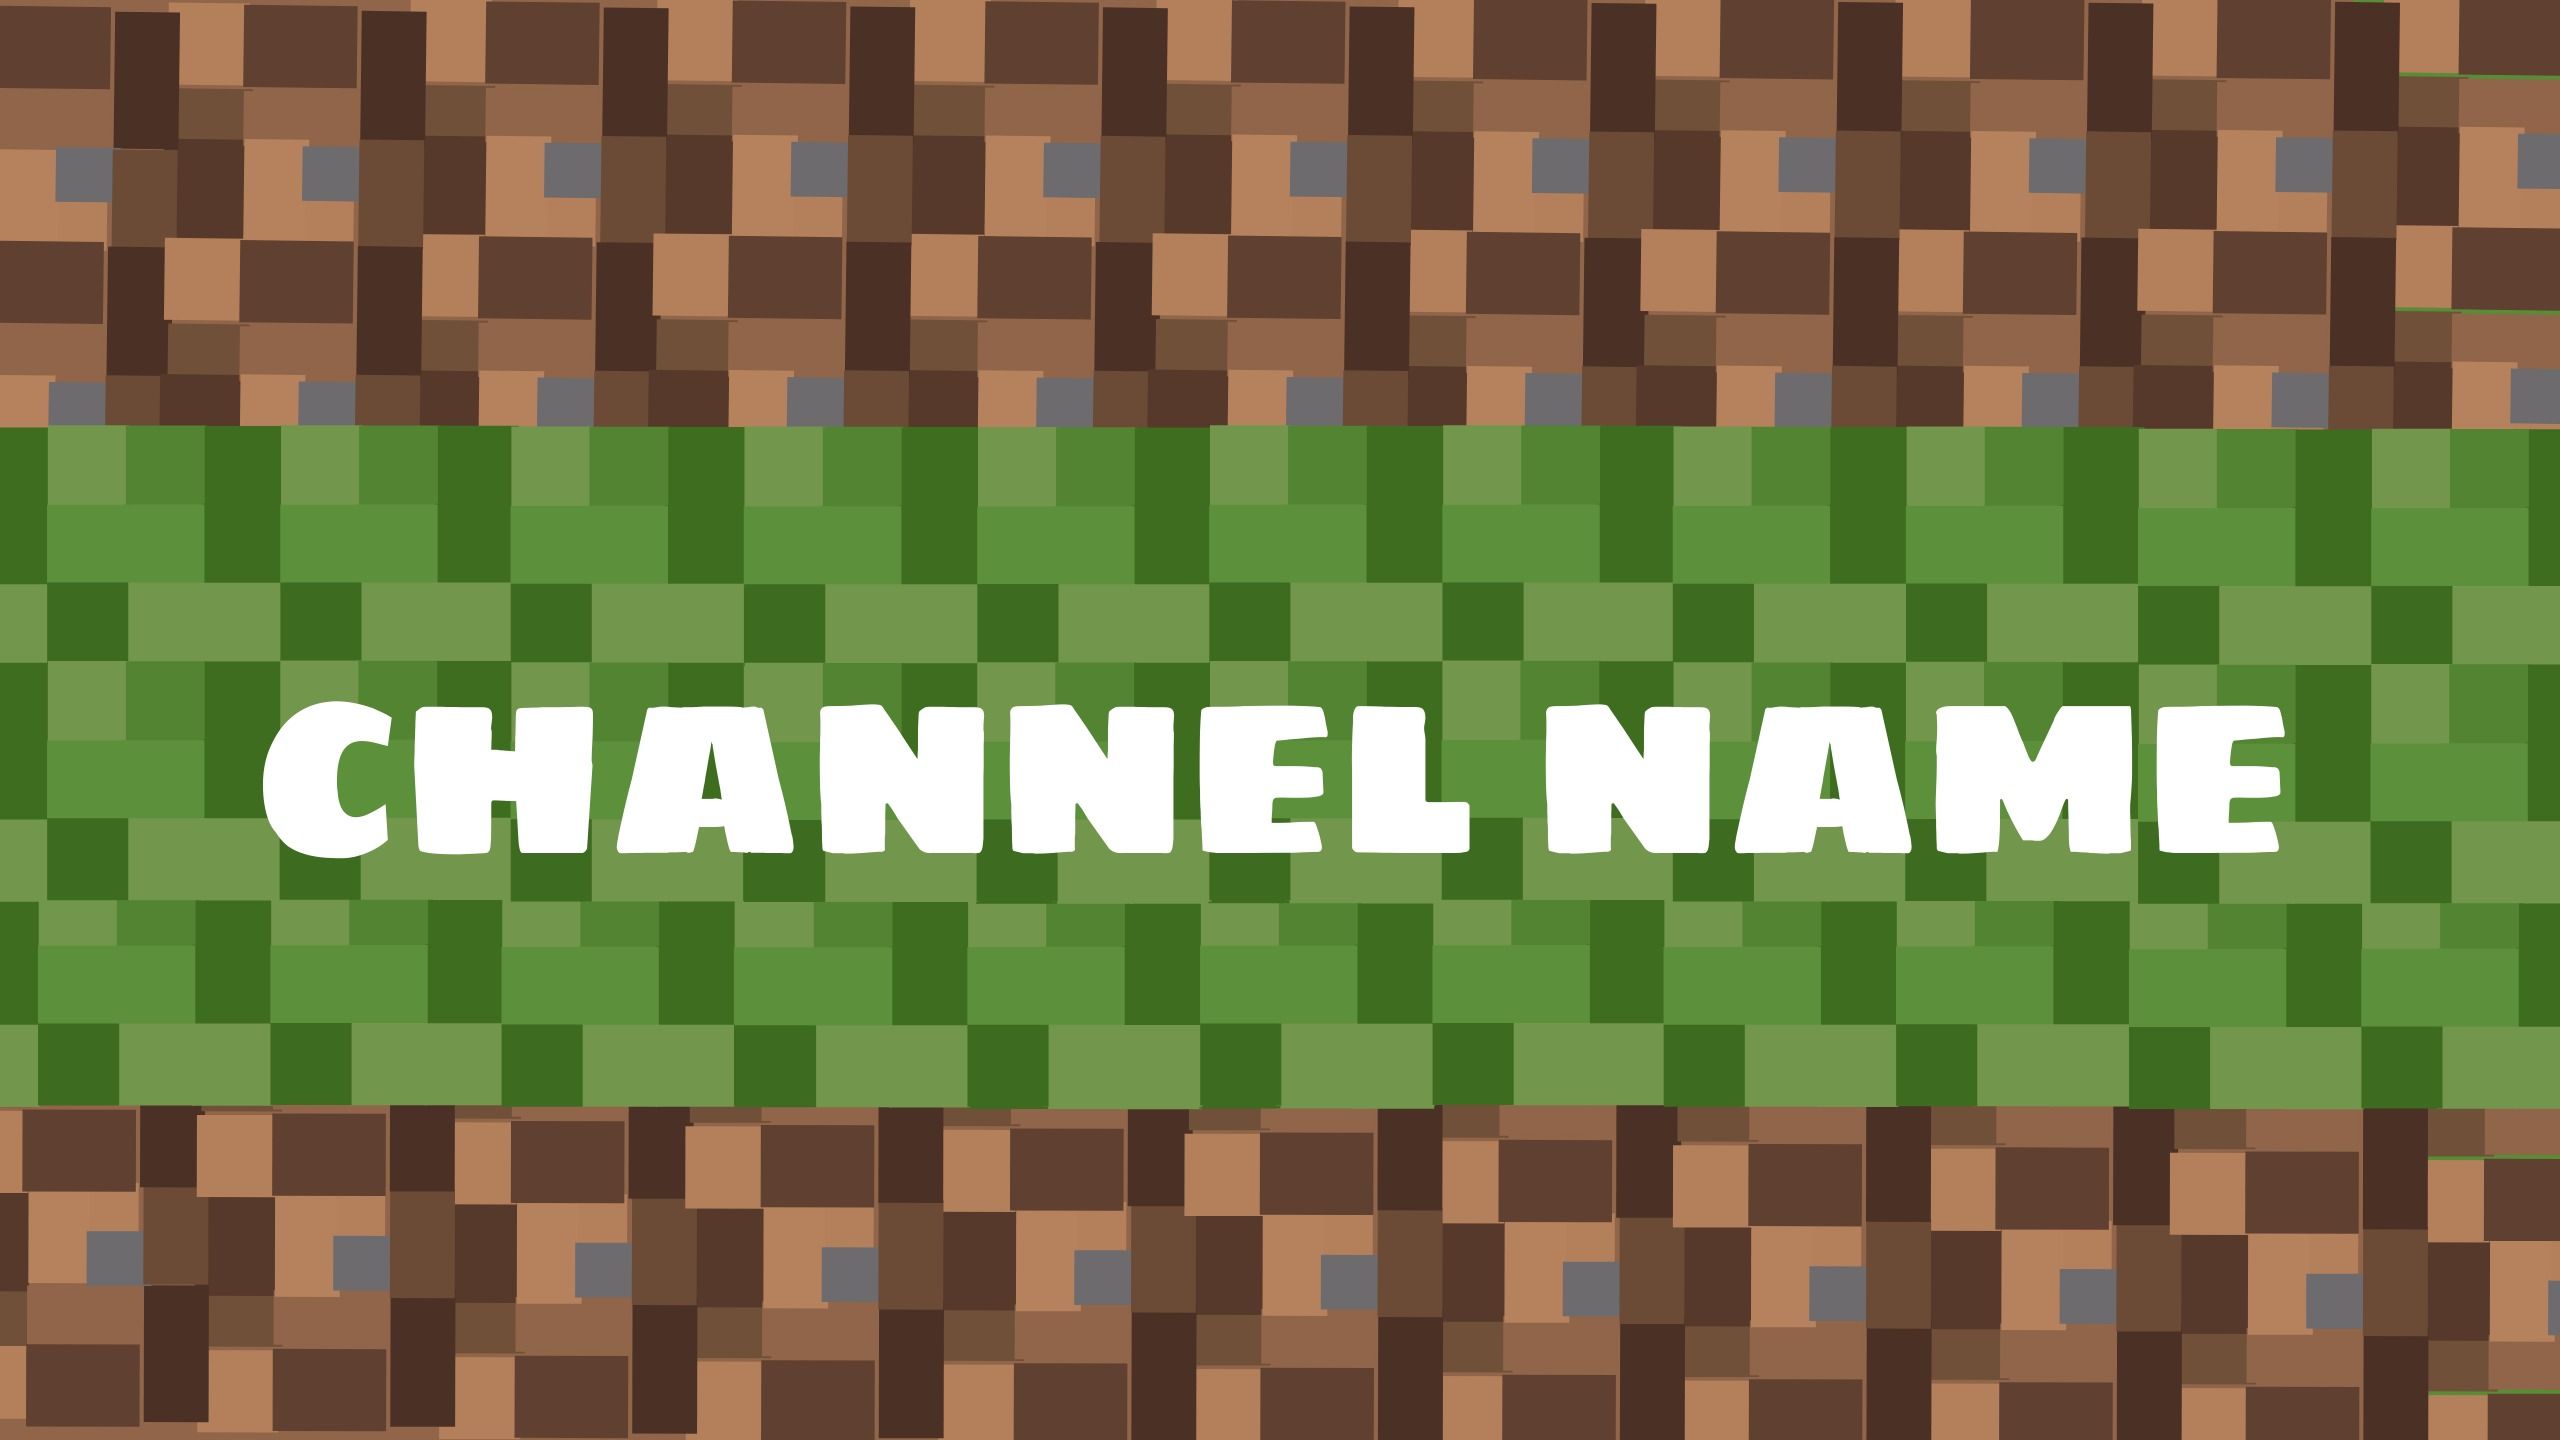 Plantilla de banner de YouTube de Minecraft con capas editables